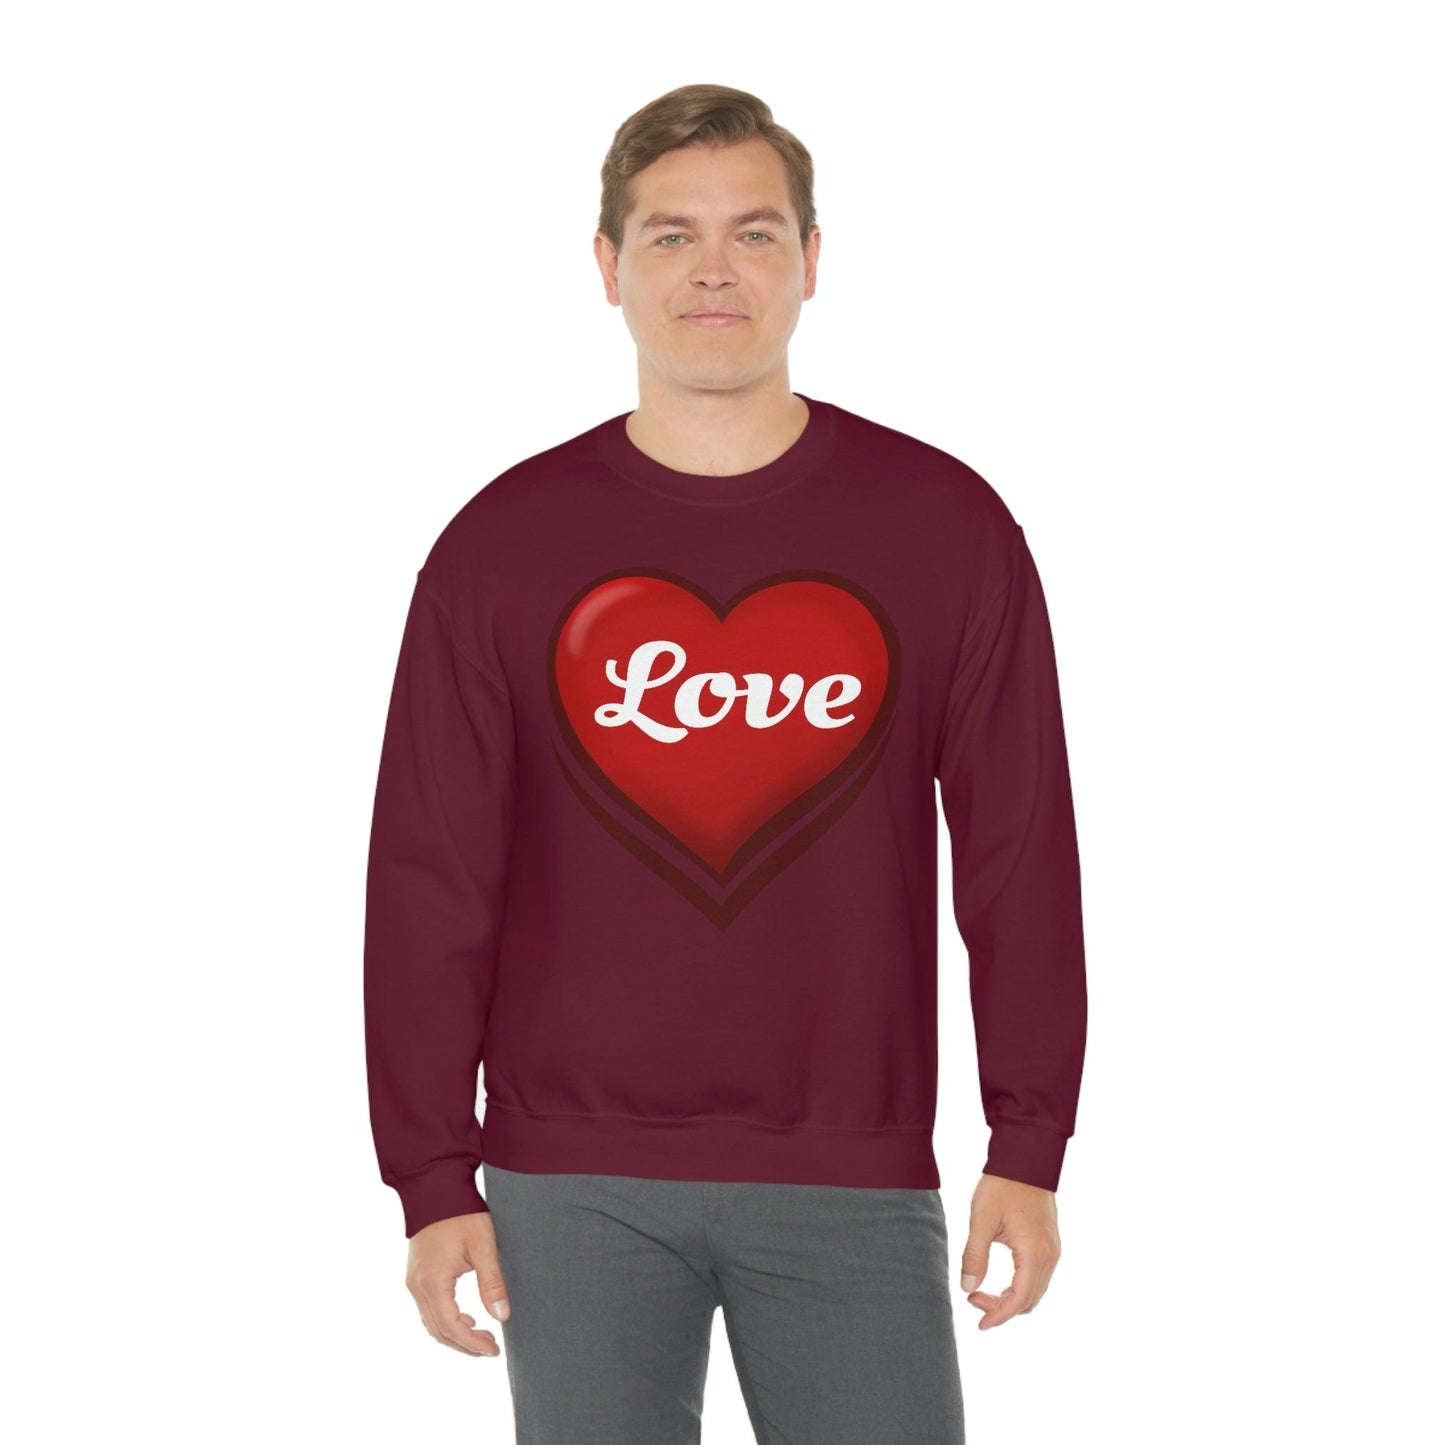 Love Sweatshirt, Valentine's Gift,